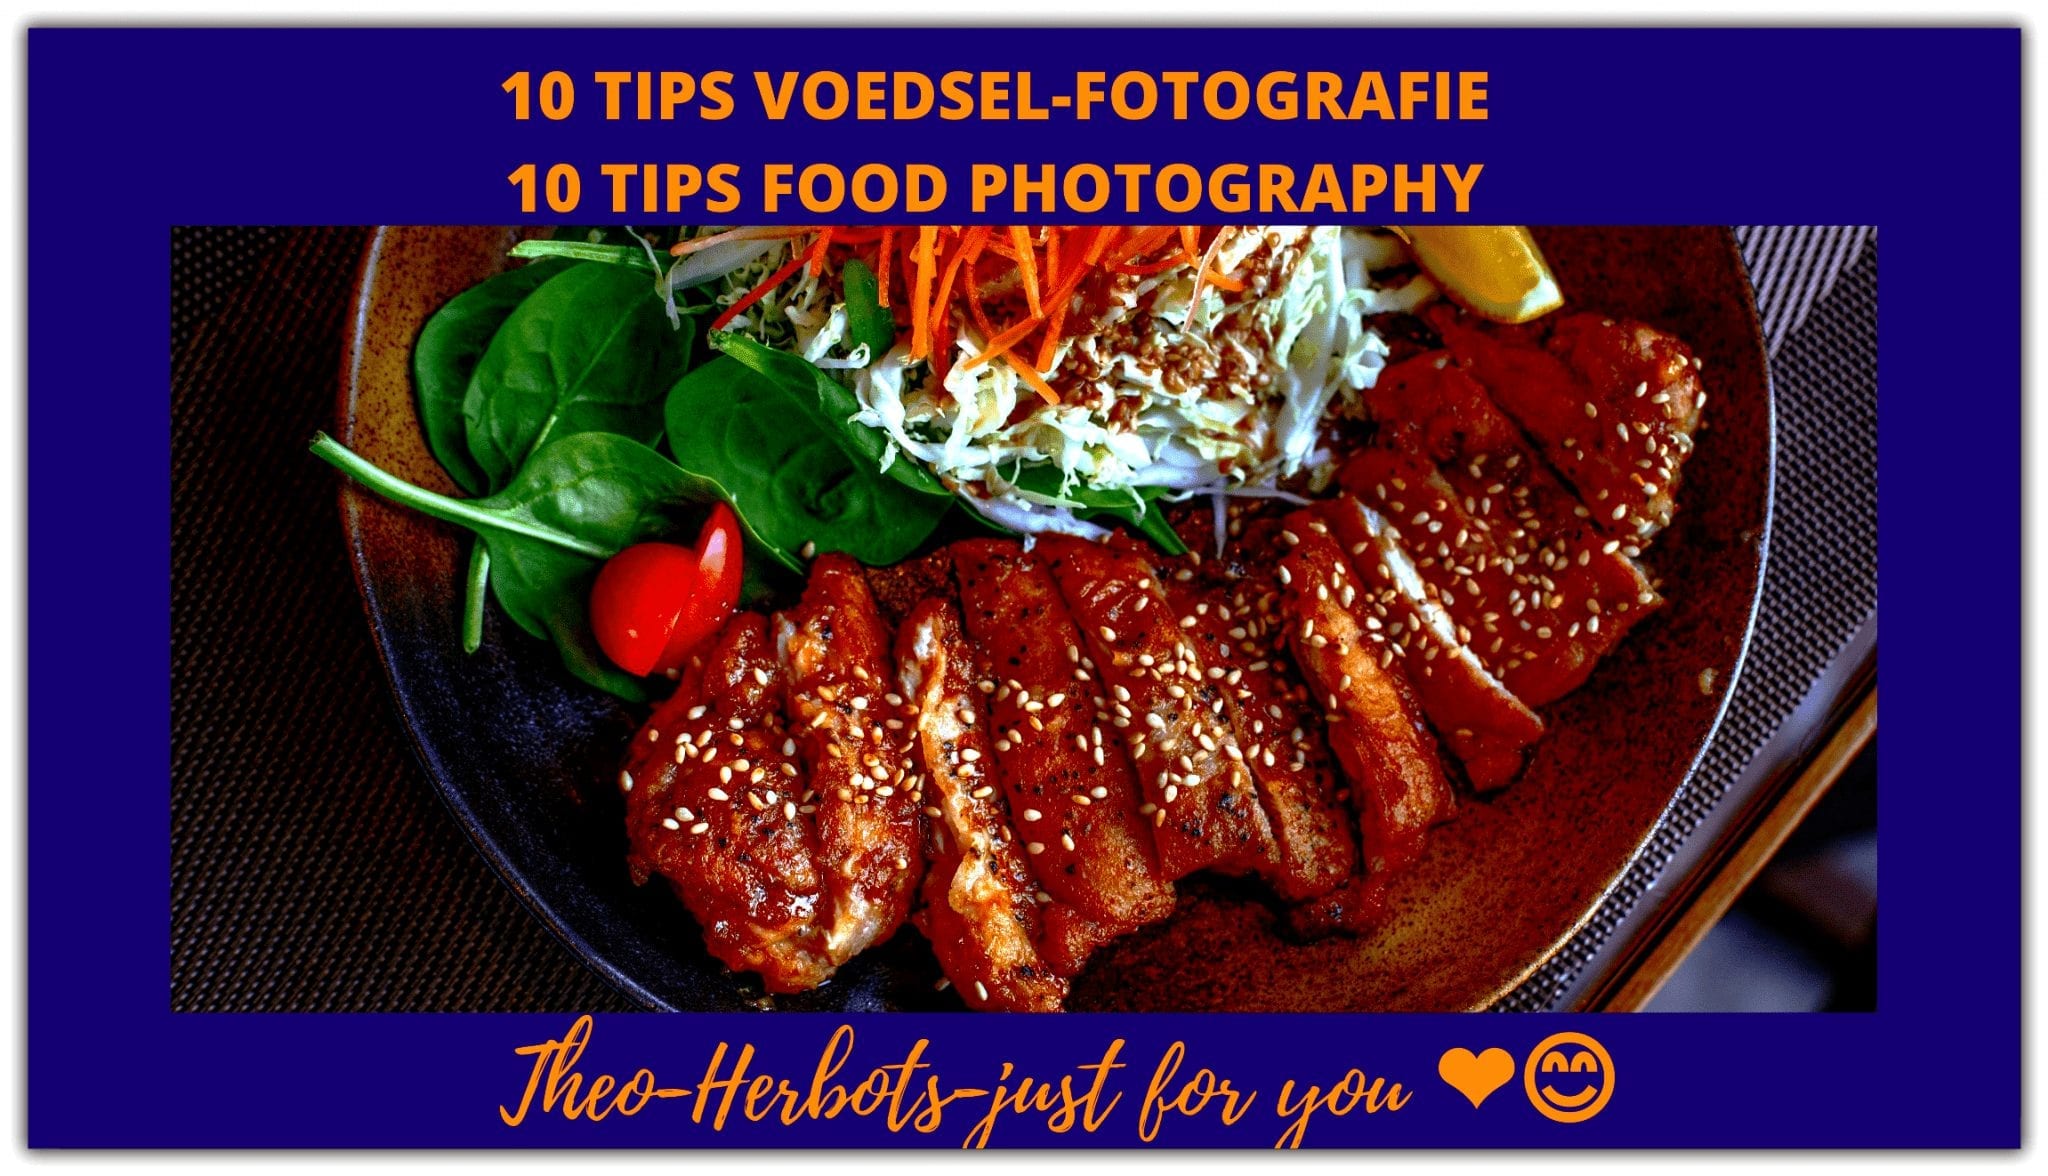 10 Tips voor het fotograferen van eten ||10 Tips for photographing food